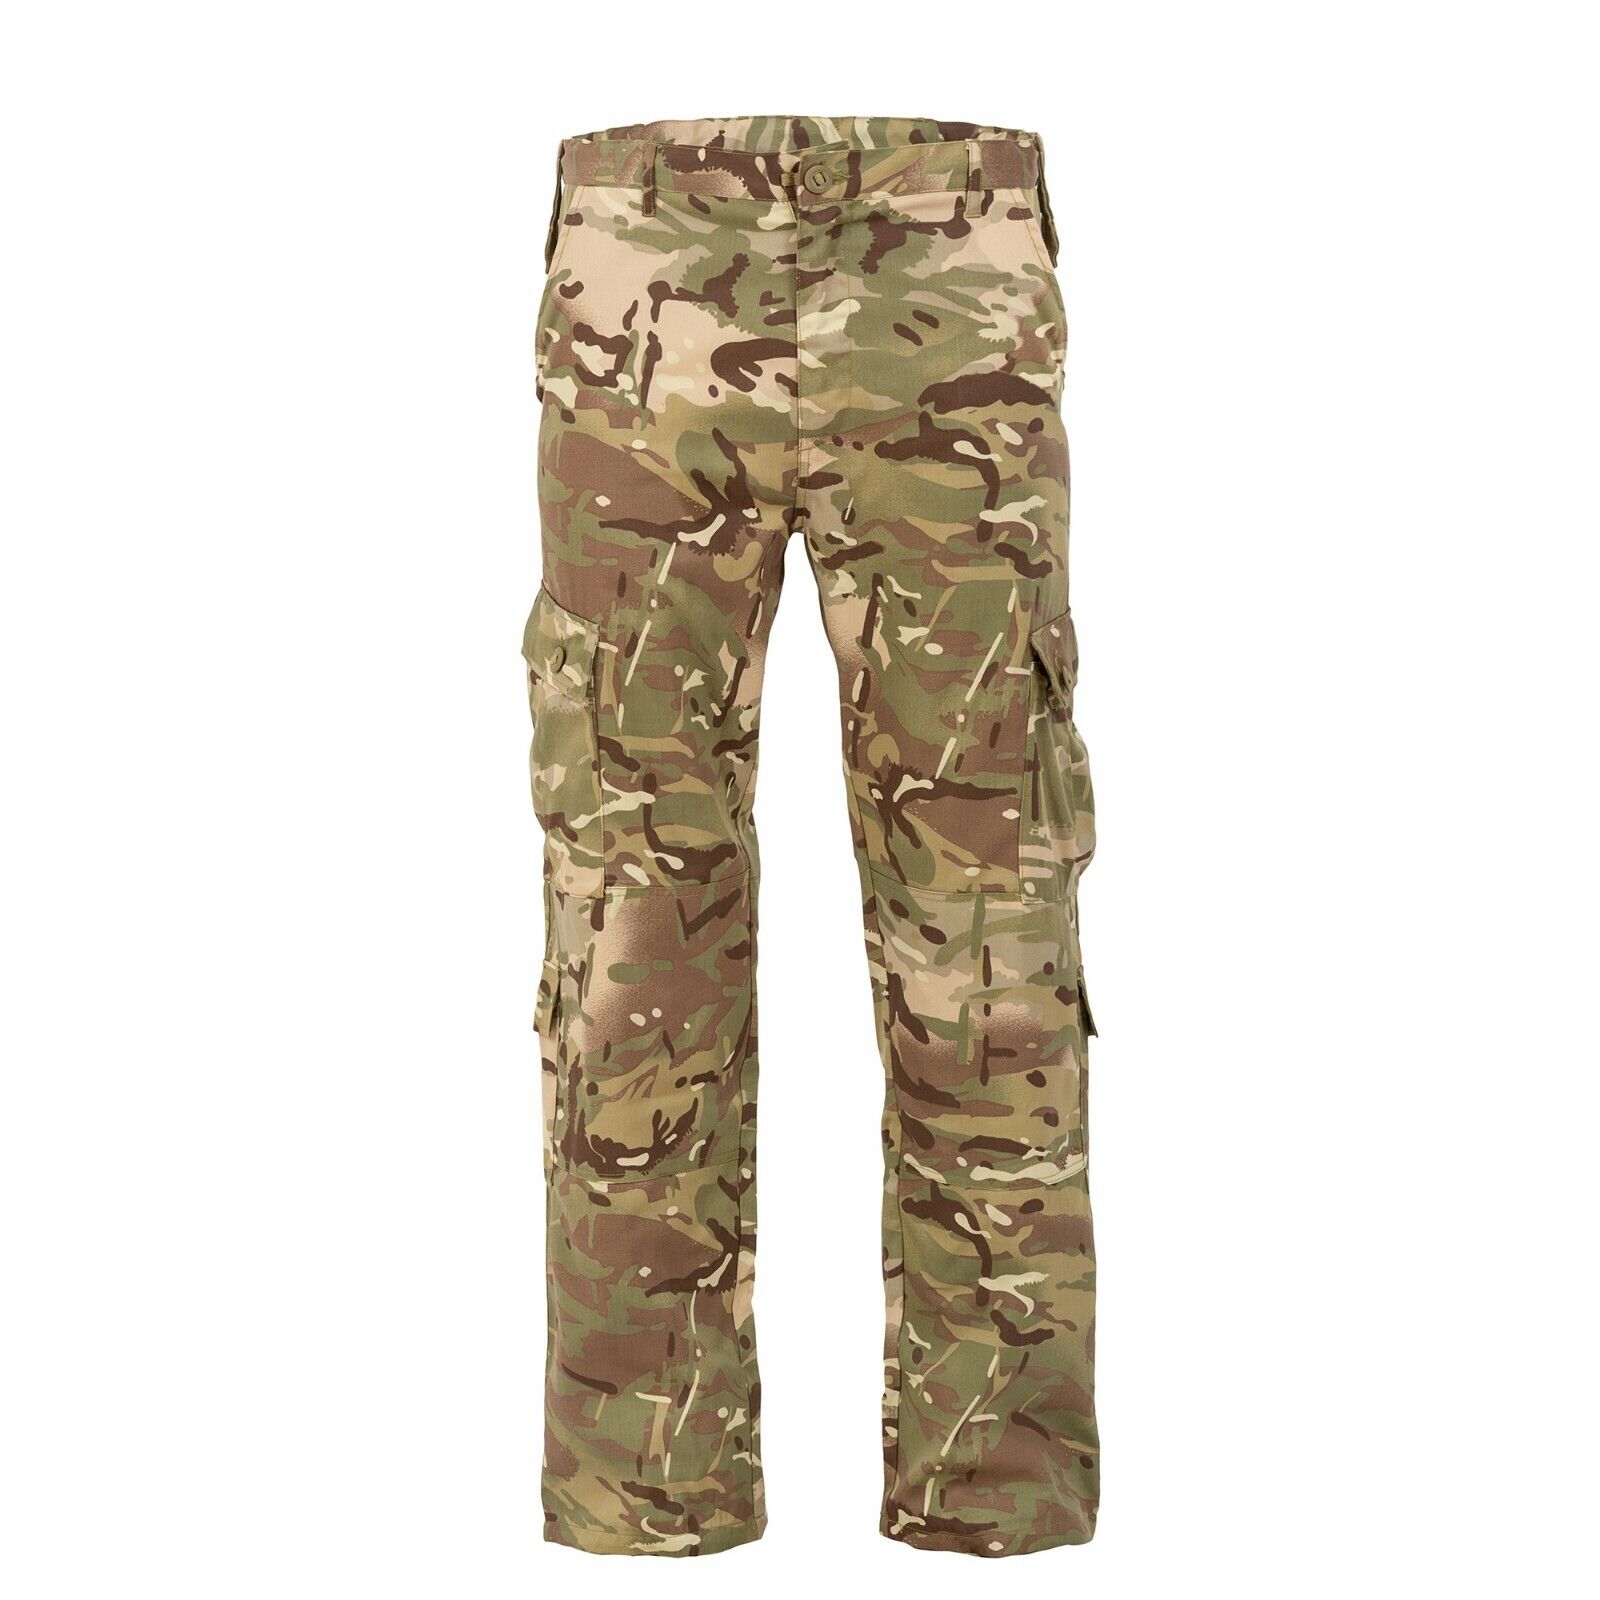 Military Combat Trousers - Multicam / MTP Match Camo Pants - Highlander Elite